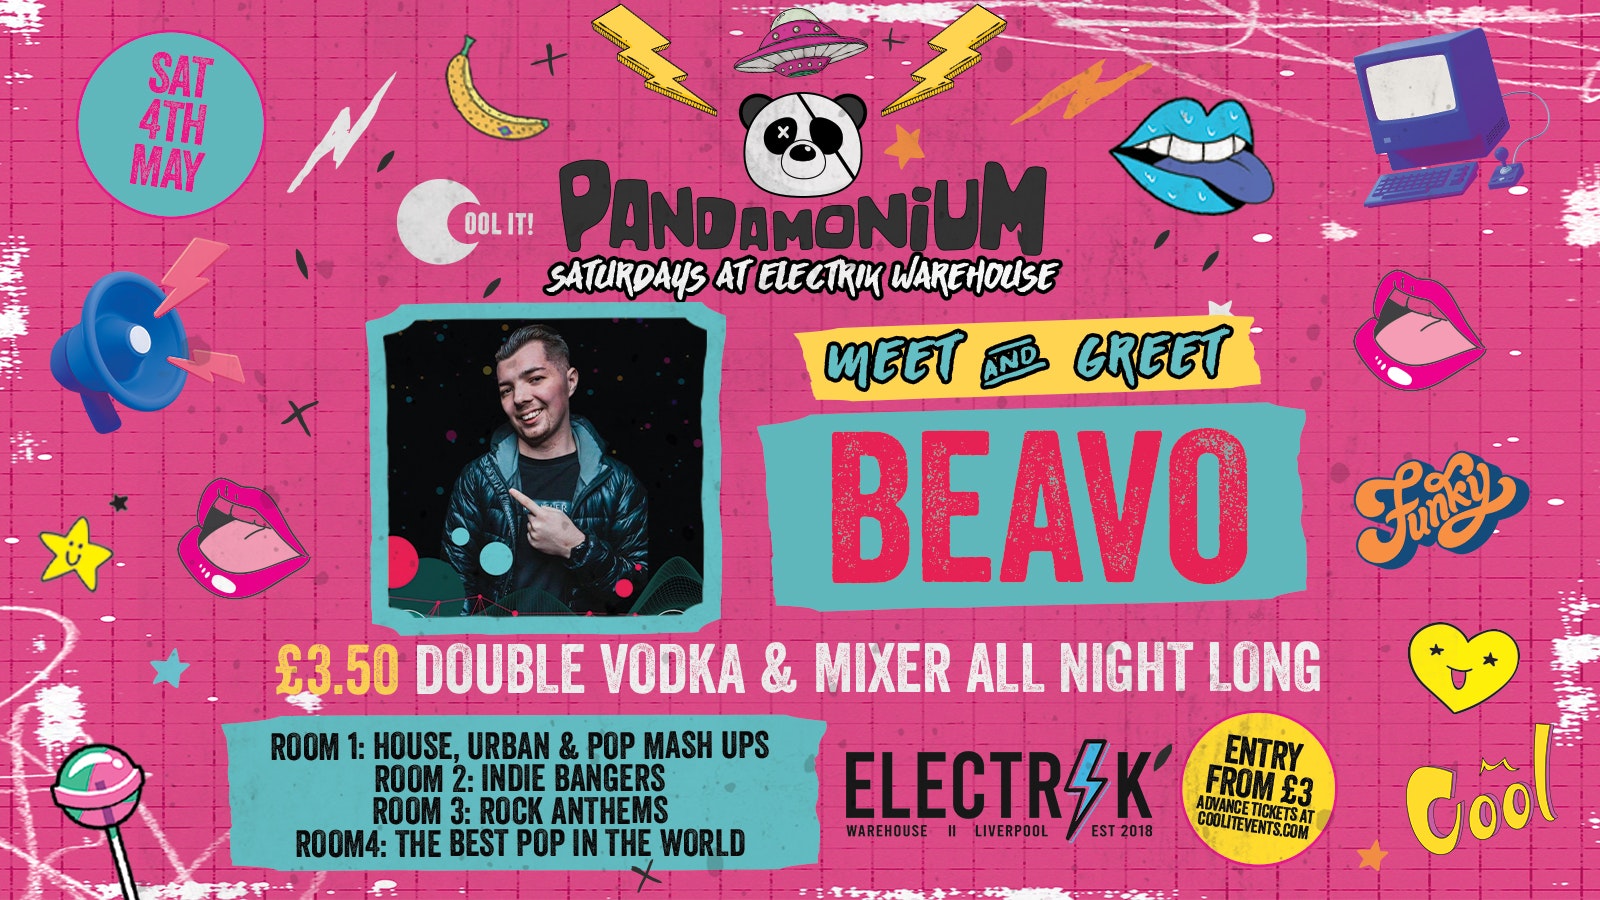 Pandamonium Saturdays : Tok Tok Special with BEAVO